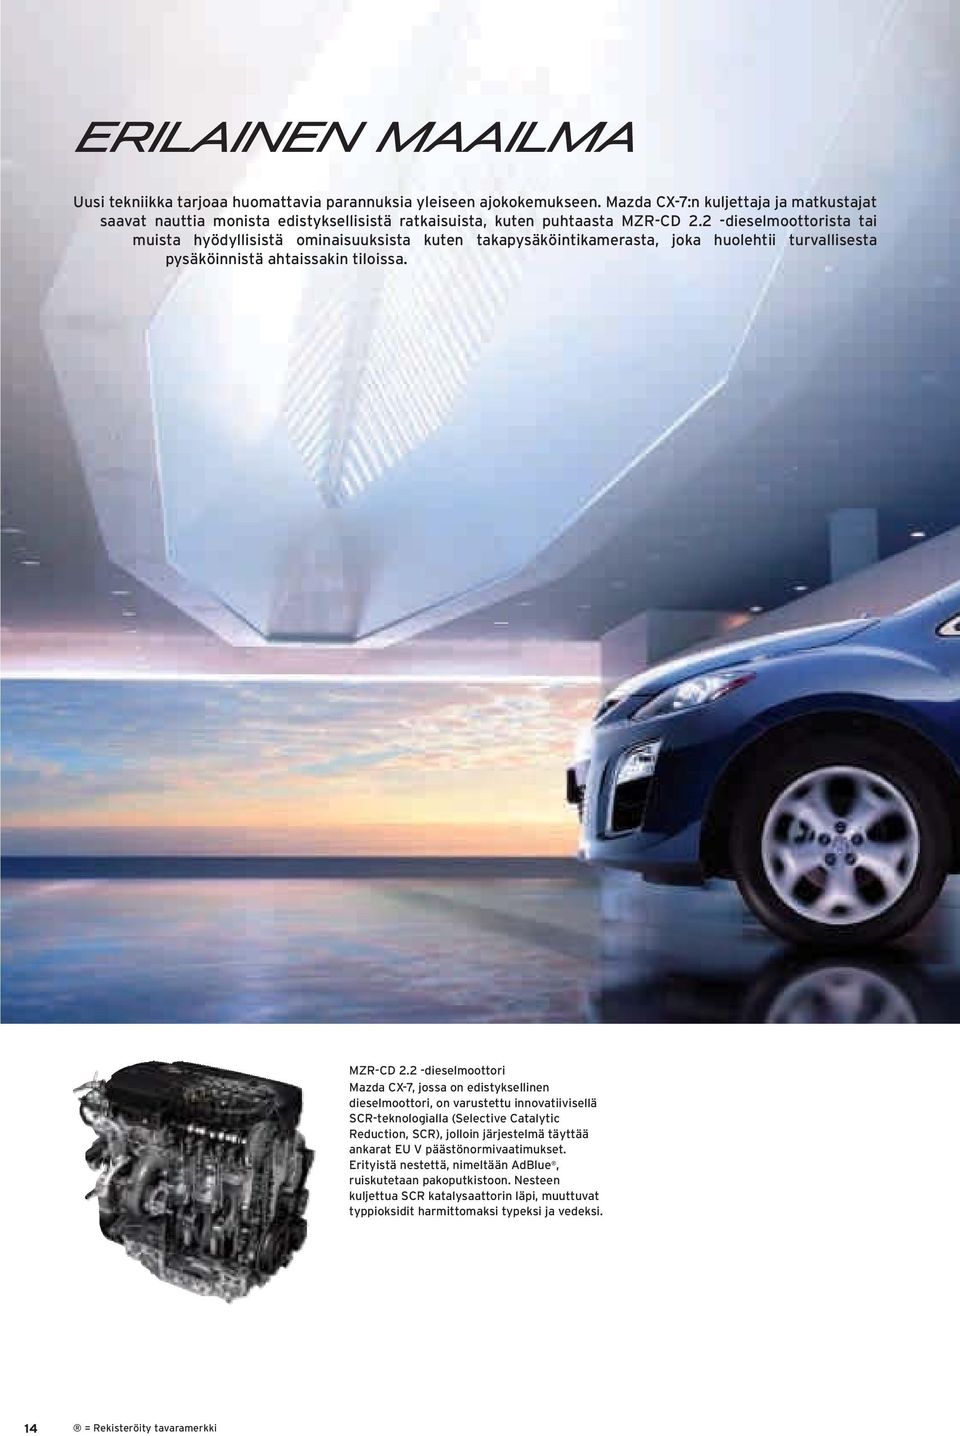 2 -dieselmoottori Mazda CX-7, jossa on edistyksellinen dieselmoottori, on varustettu innovatiivisellä SCR-teknologialla (Selective Catalytic Reduction, SCR), jolloin järjestelmä täyttää ankarat